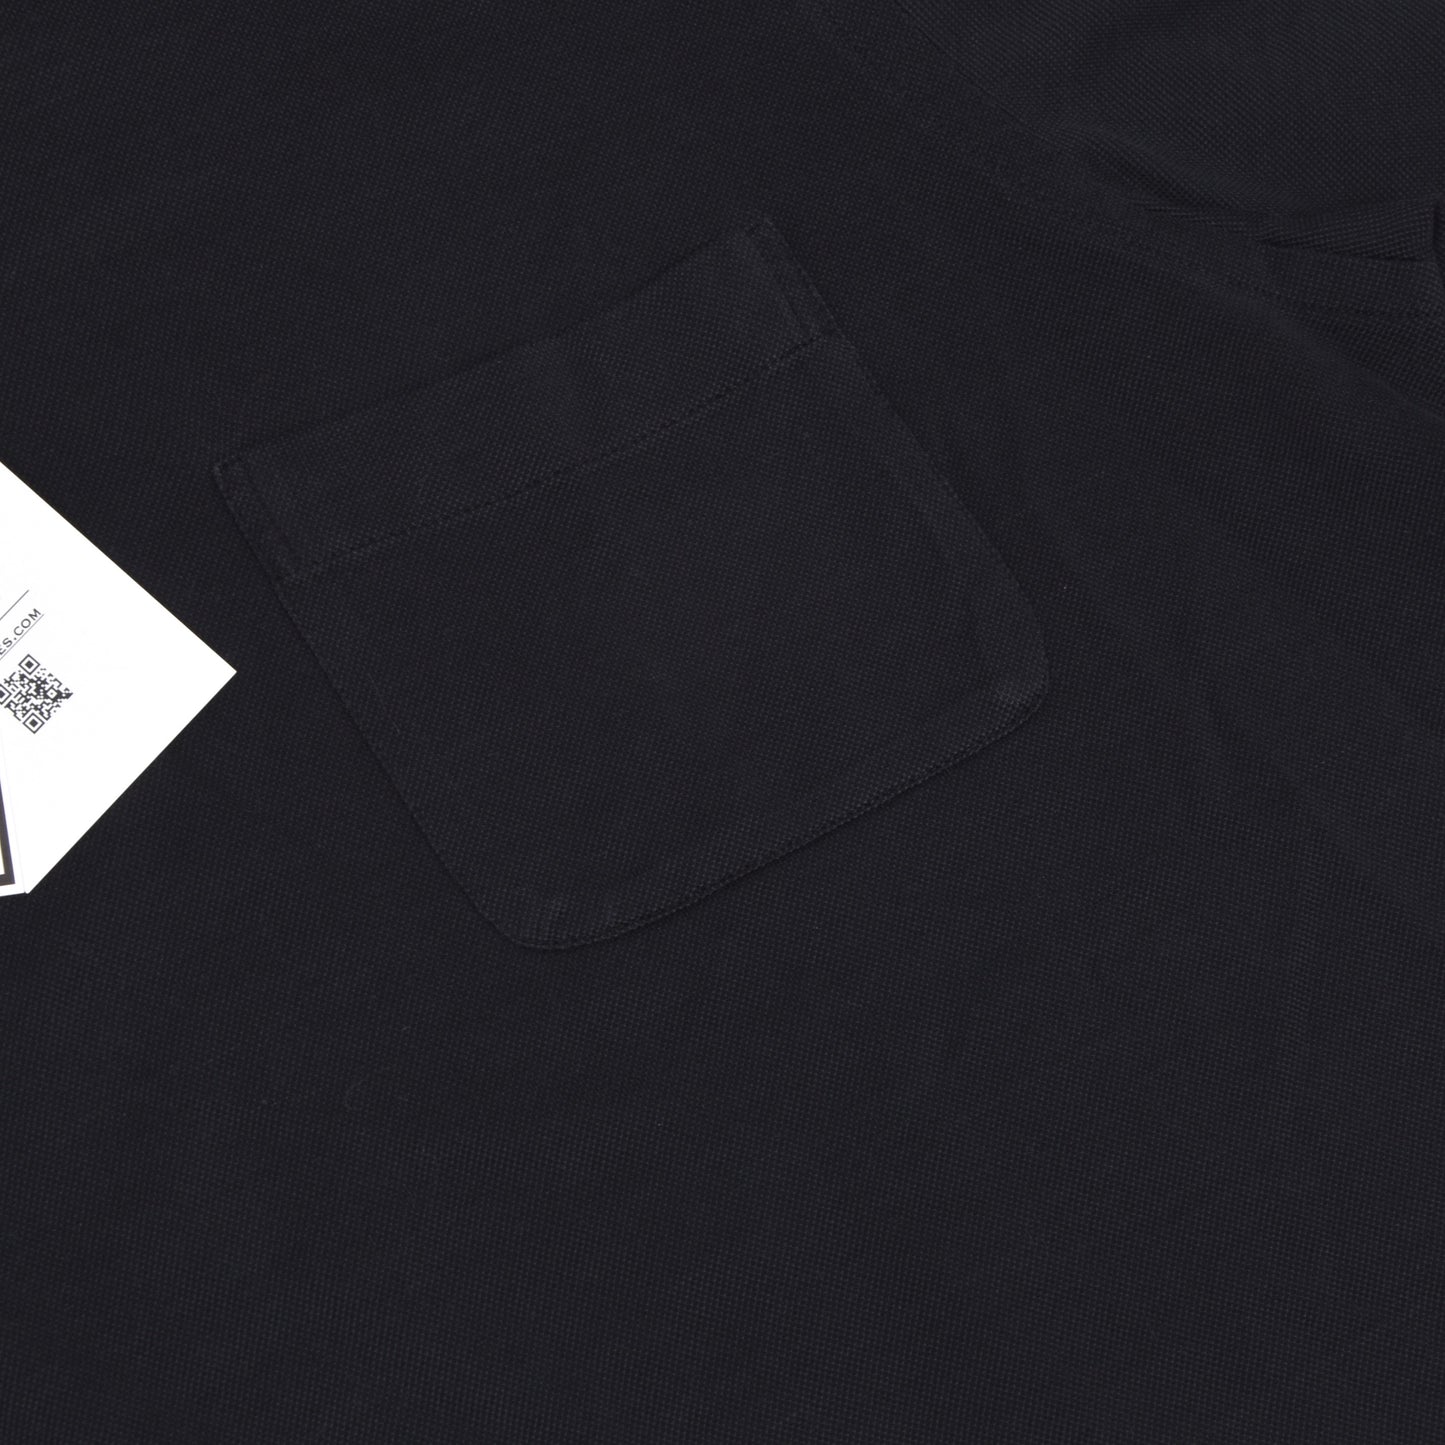 Brioni Polo Shirt Size L - Black/Charcoal